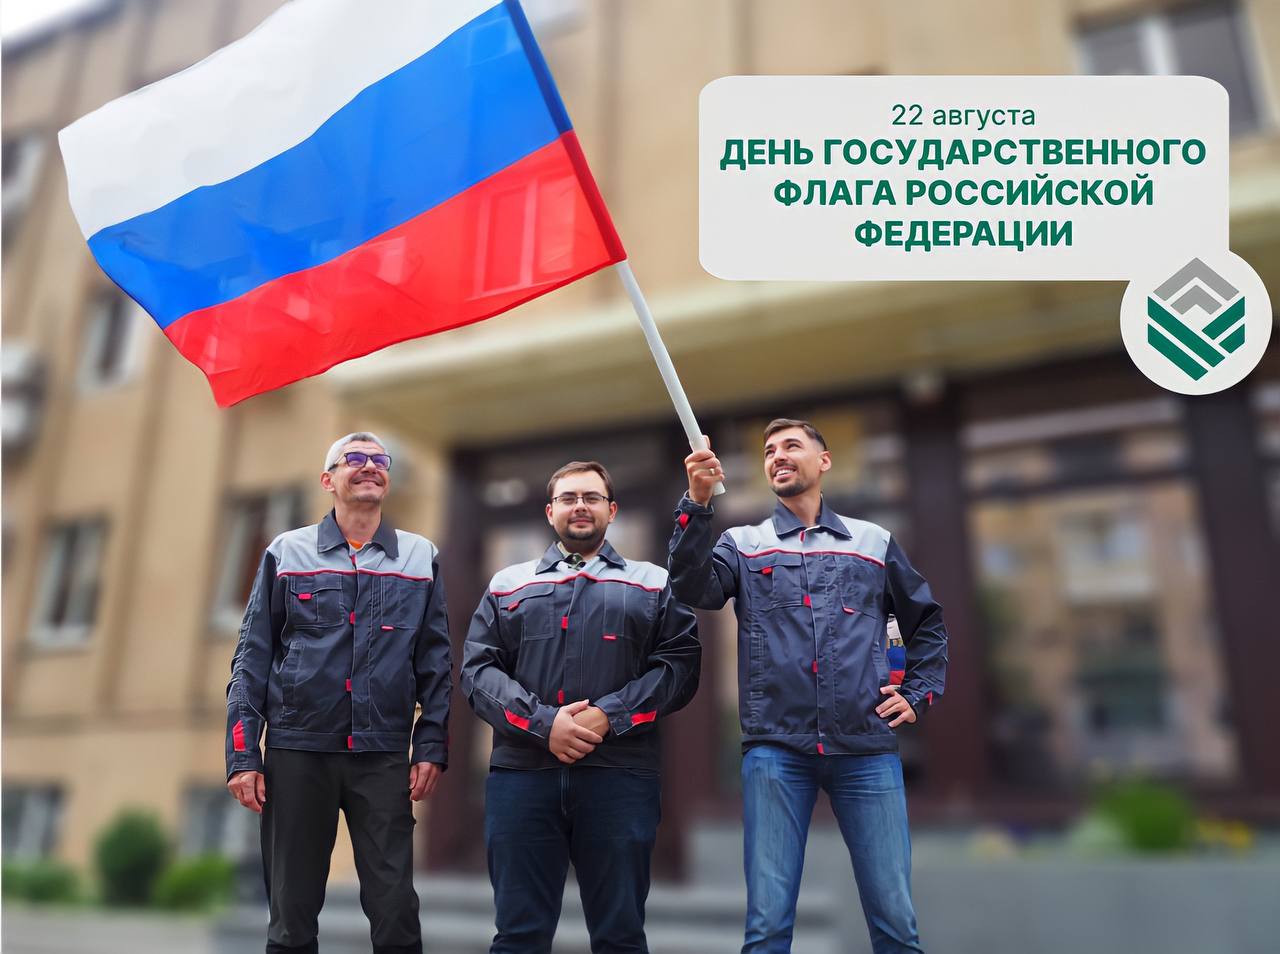 Поздравляем с Днем Государственного Флага Российской Федерации!